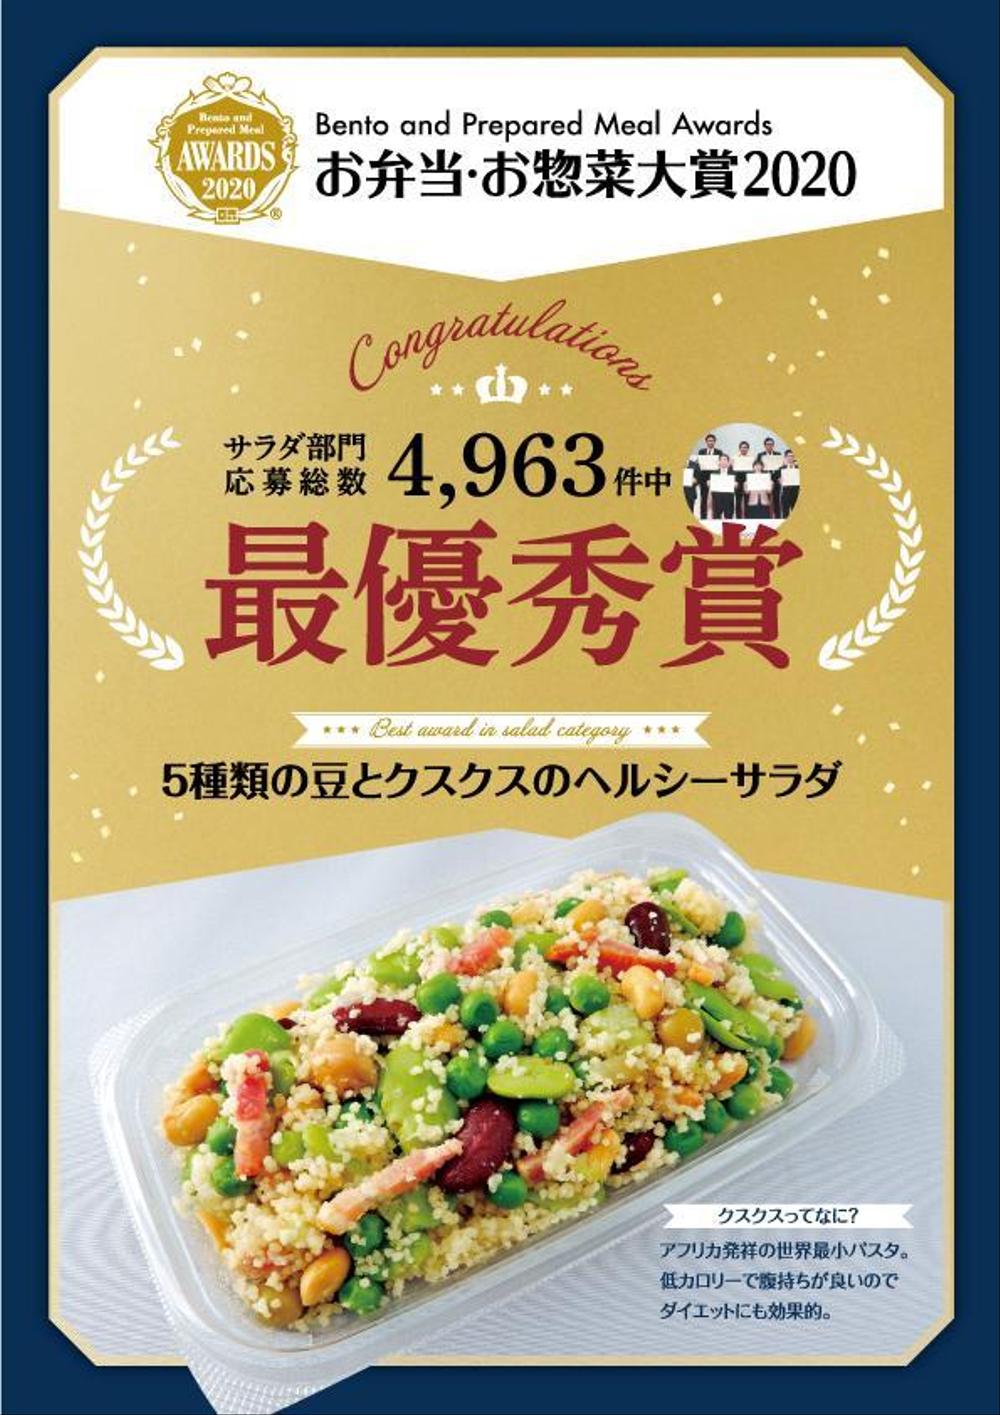 全国規模の惣菜コンテストで受賞した商品の販促ポスター作成